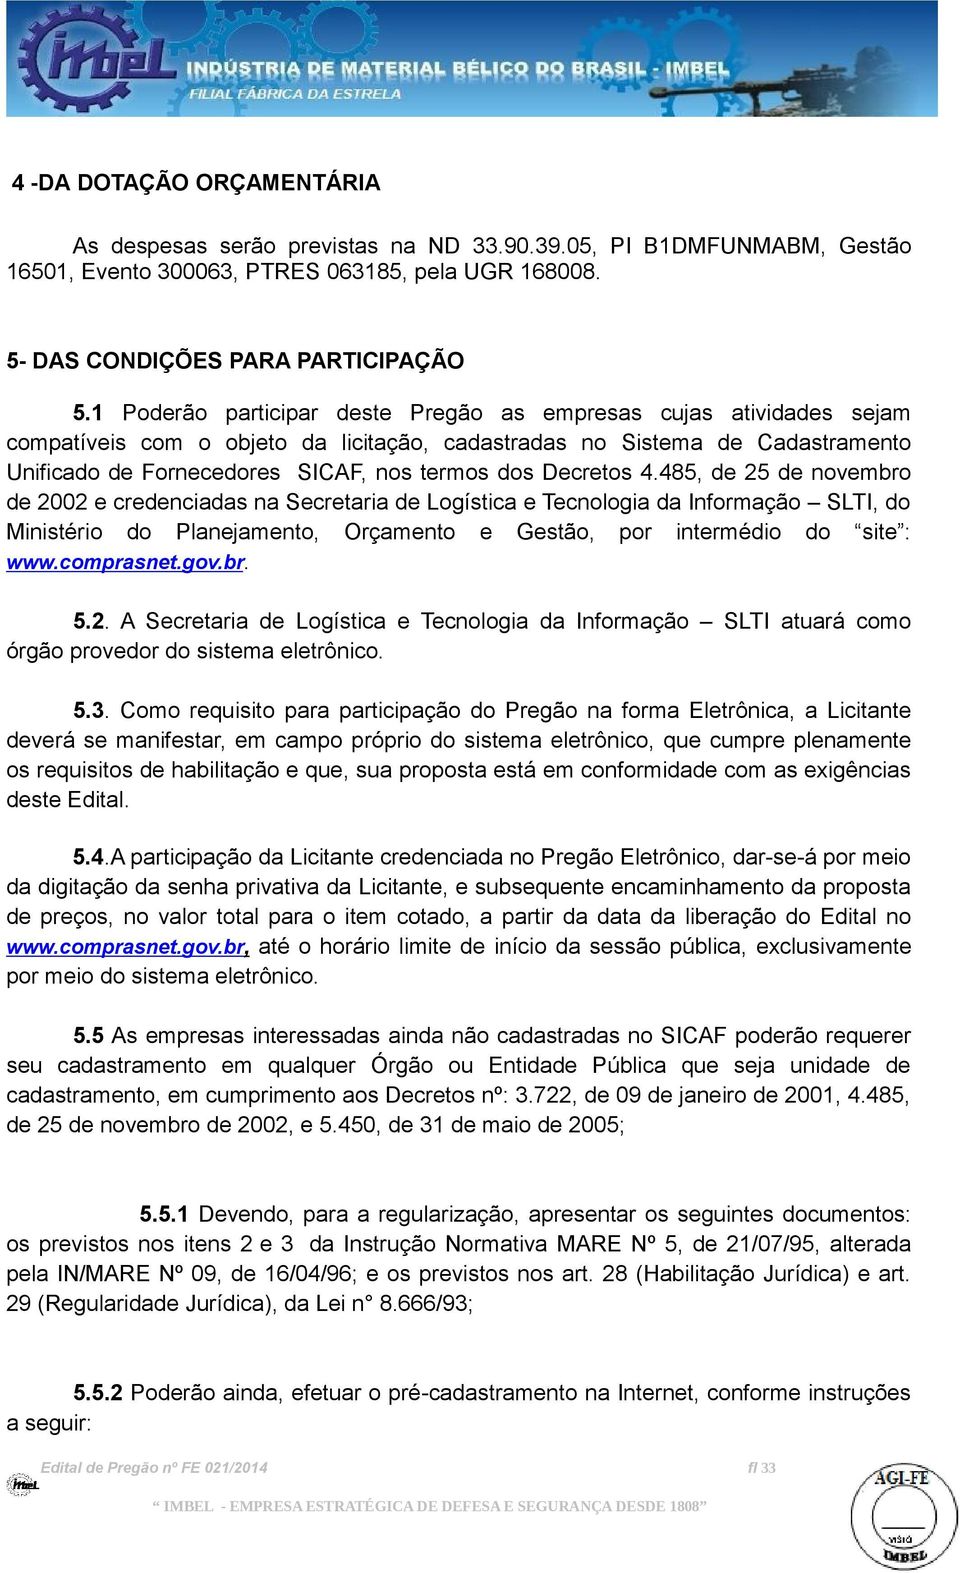 Decretos 4.485, de 25 de novembro de 2002 e credenciadas na Secretaria de Logística e Tecnologia da Informação SLTI, do Ministério do Planejamento, Orçamento e Gestão, por intermédio do site : www.